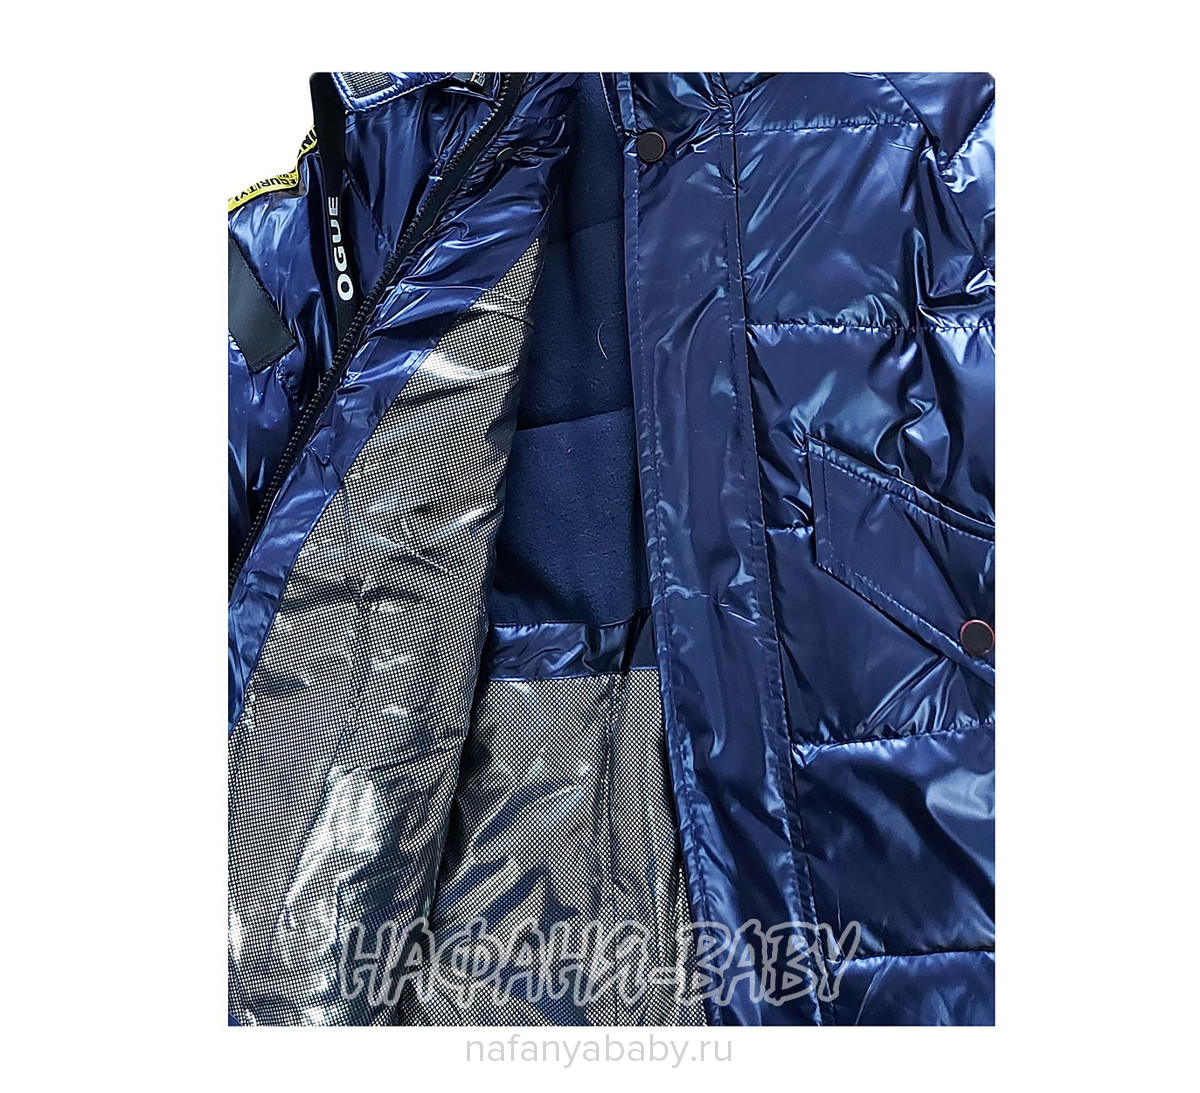 Зимняя куртка XIN LI, купить в интернет магазине Нафаня. арт: 1213.